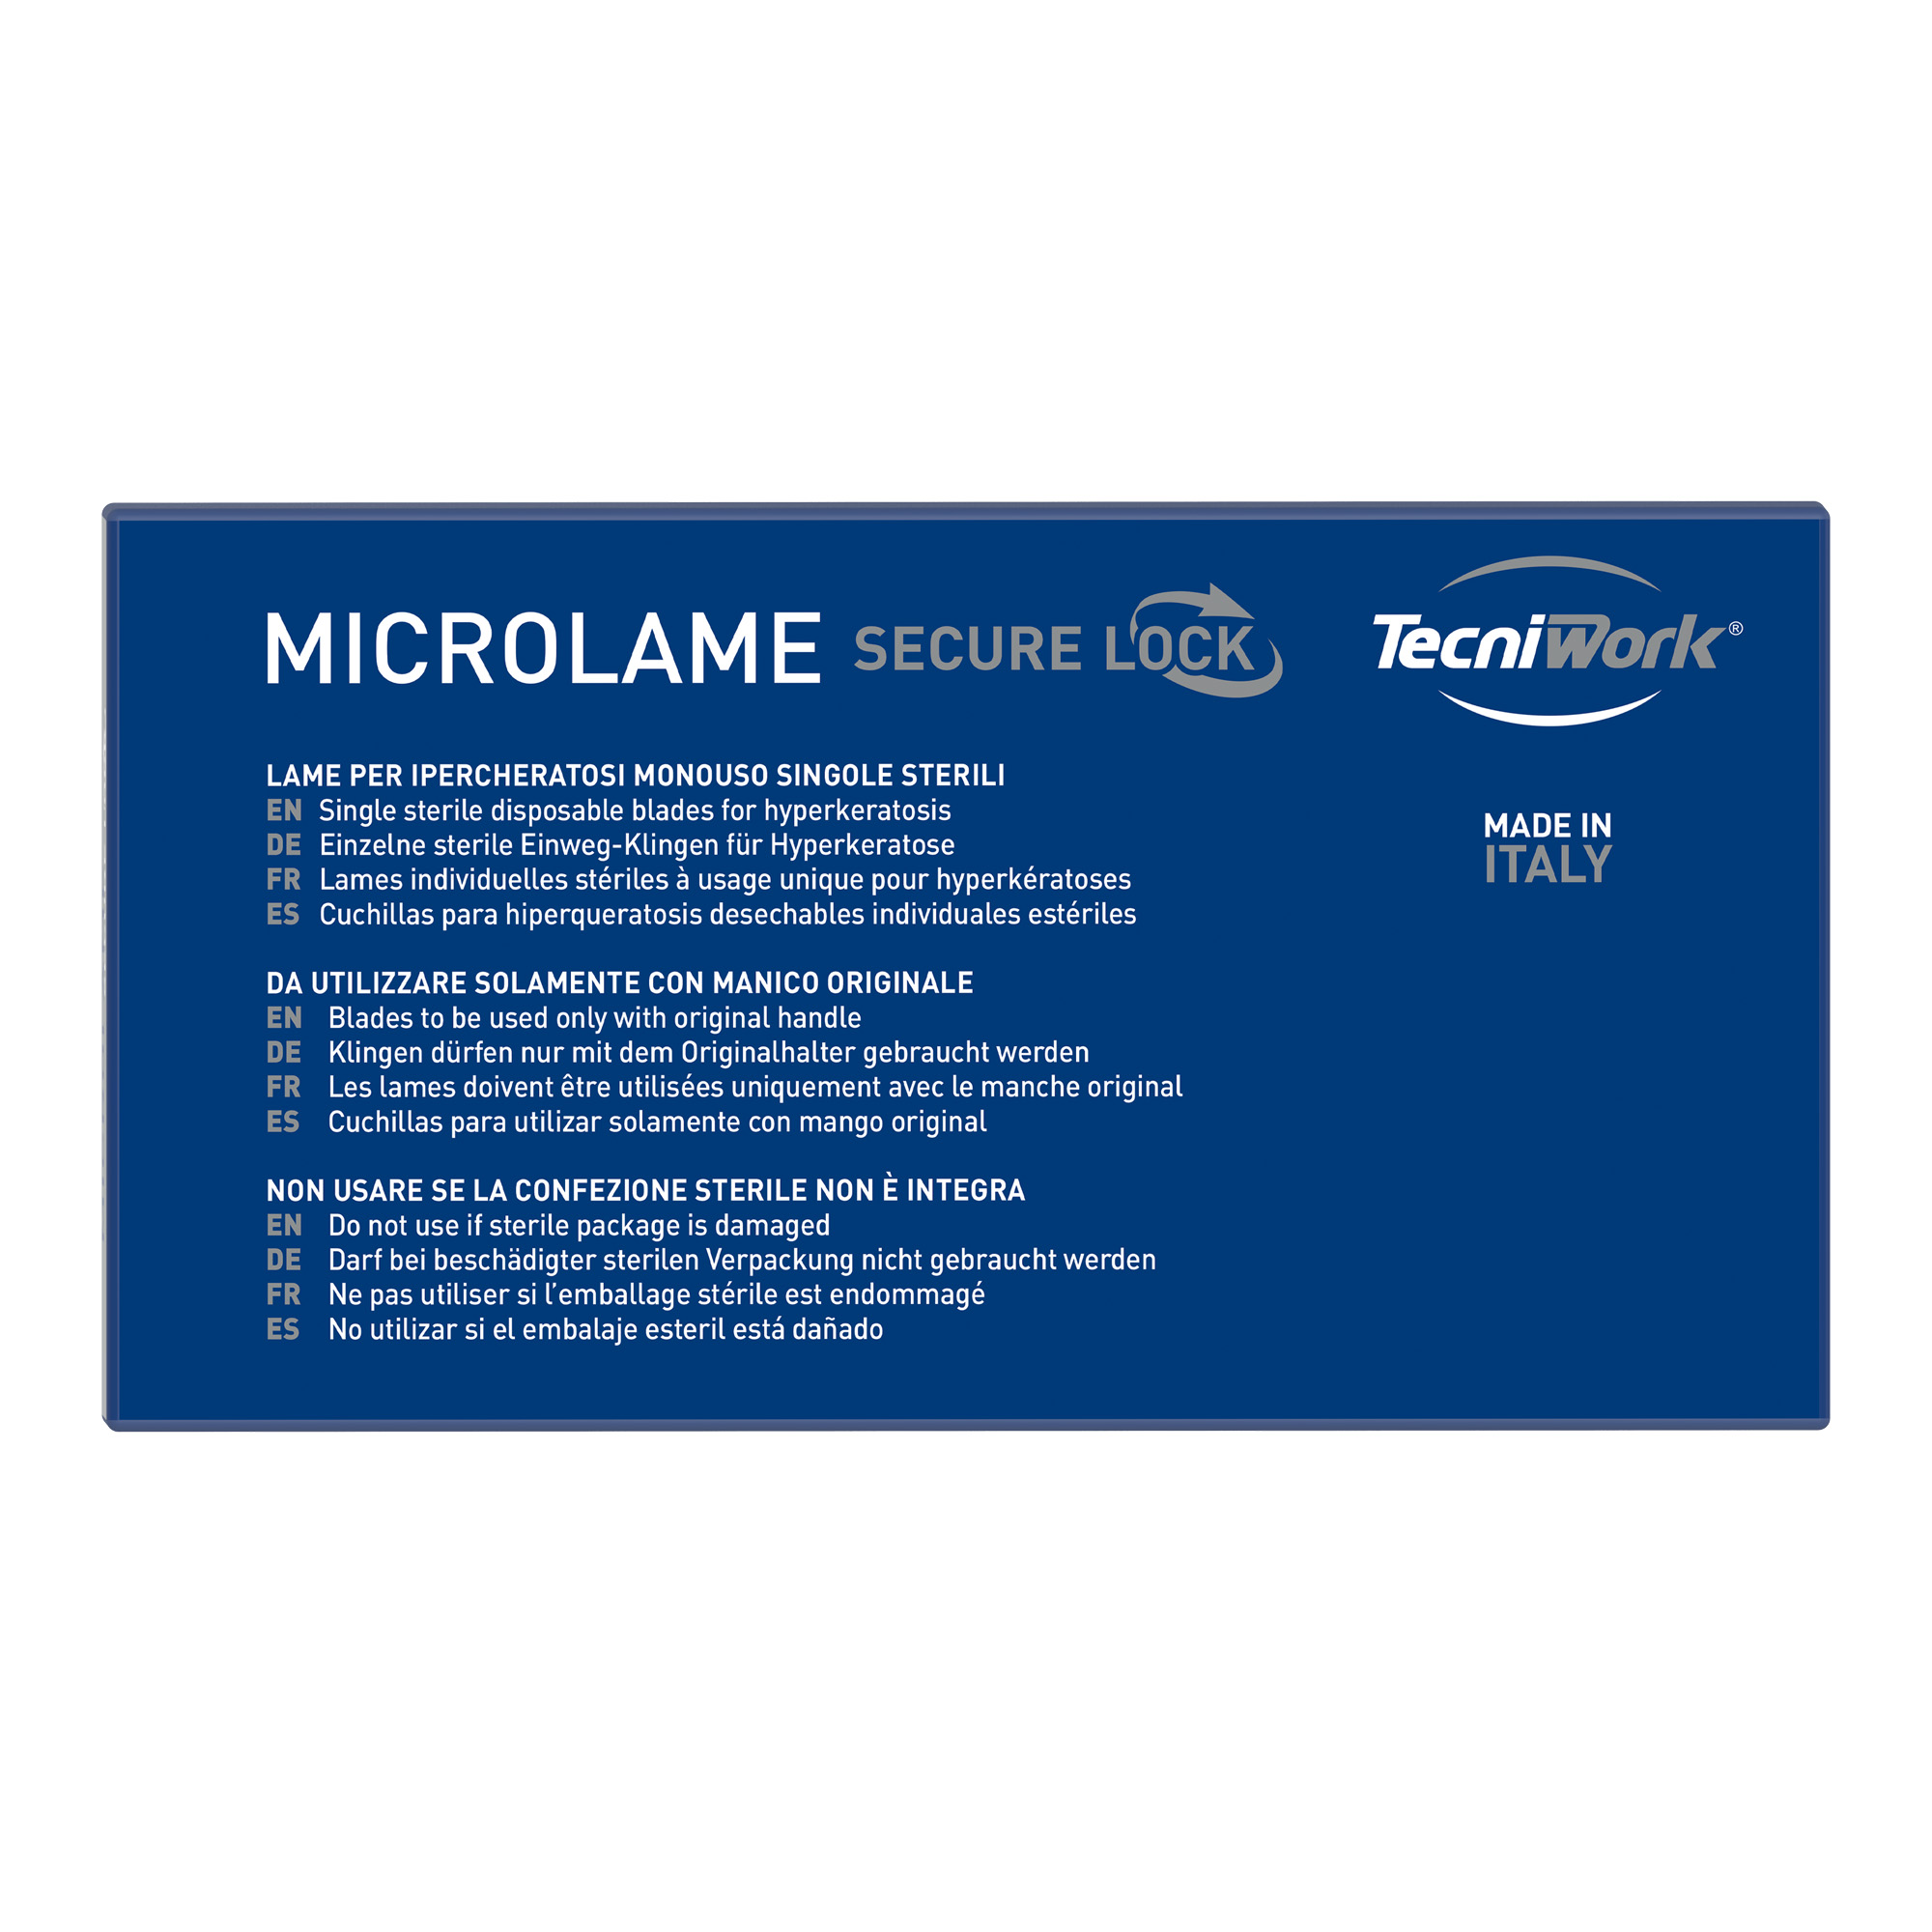 Microlame professionali singole sterili e monouso Secure Lock misure assortite 40 pz